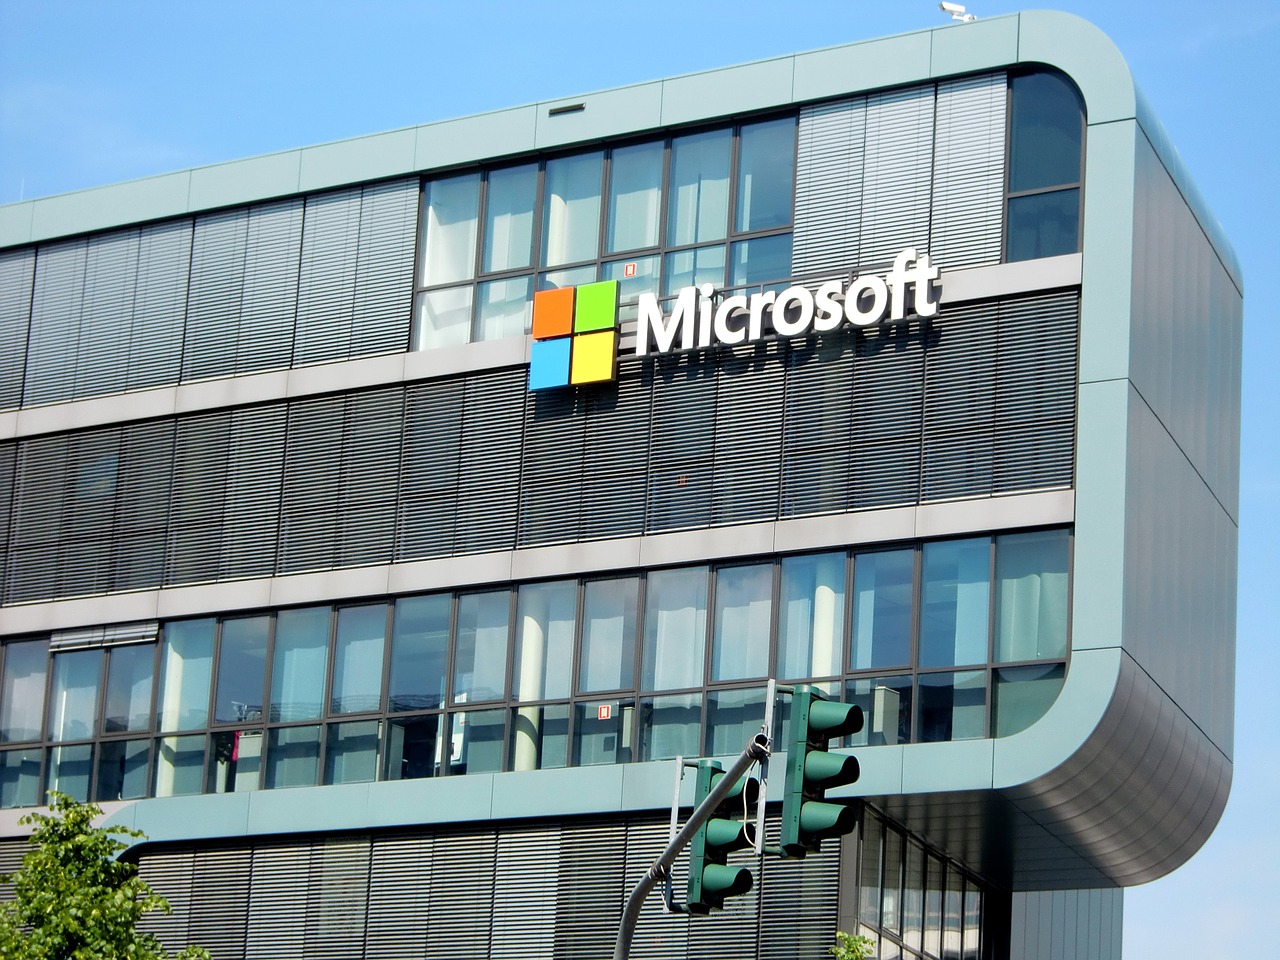 Office tendrá nueva tipografía predeterminada, ¡Microsoft cambiará Calibri!